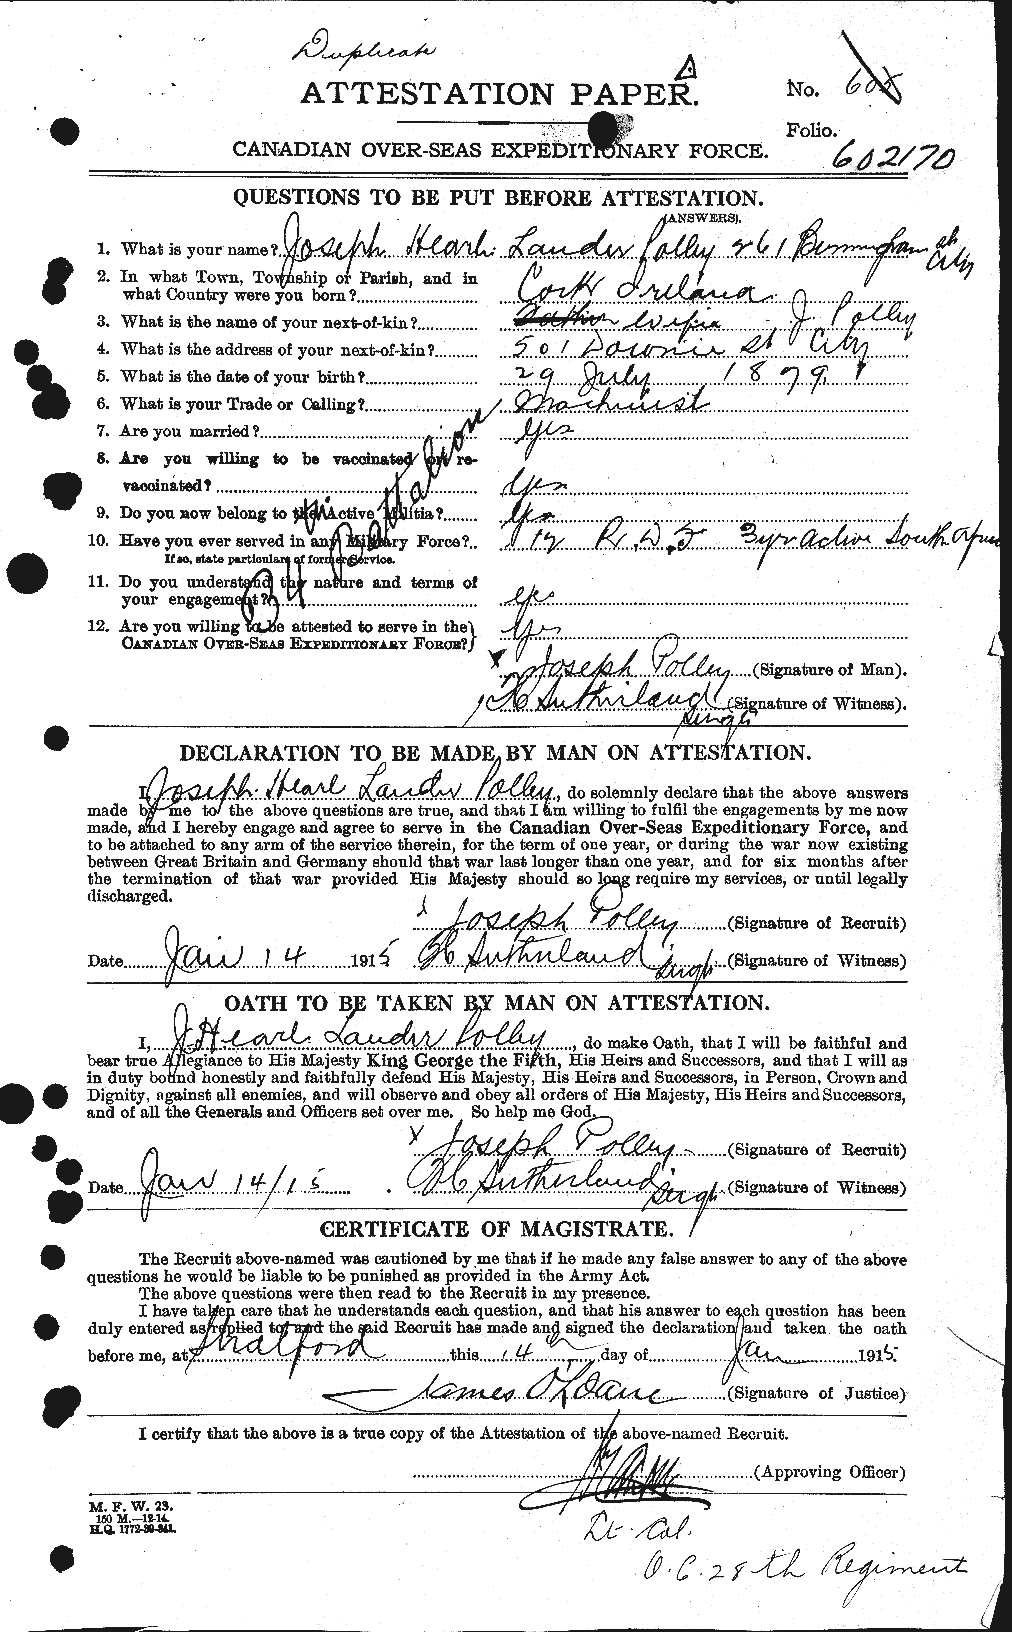 Dossiers du Personnel de la Première Guerre mondiale - CEC 579828a